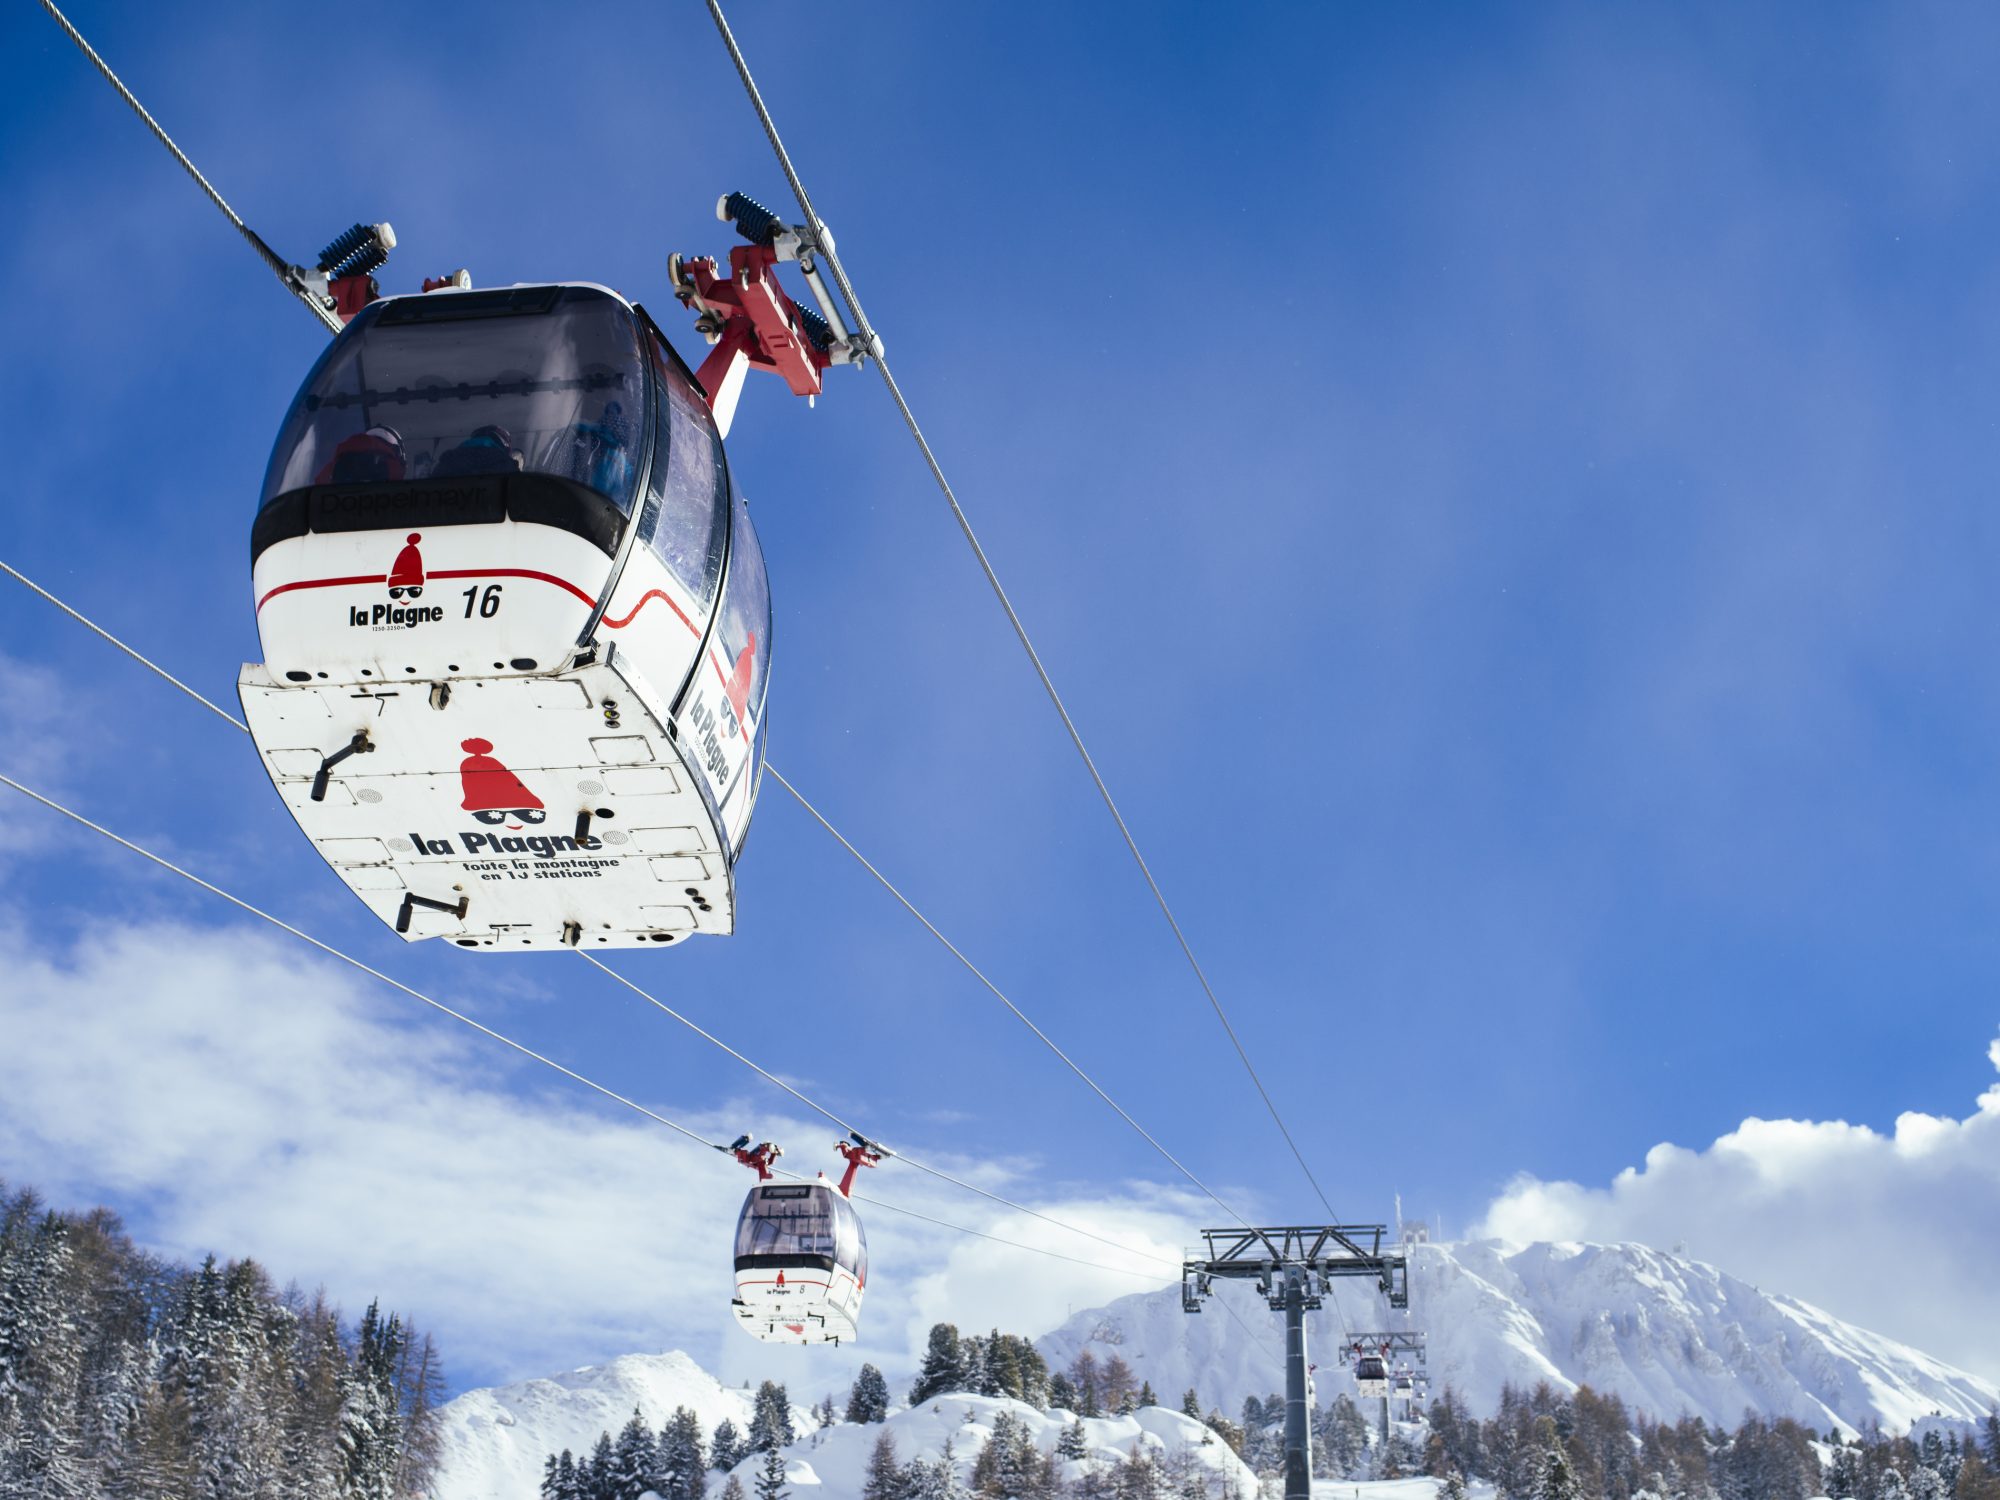 Funiplagne at La Plagne. What is new at La Plagne for the 2018 – 19 ski-season. 